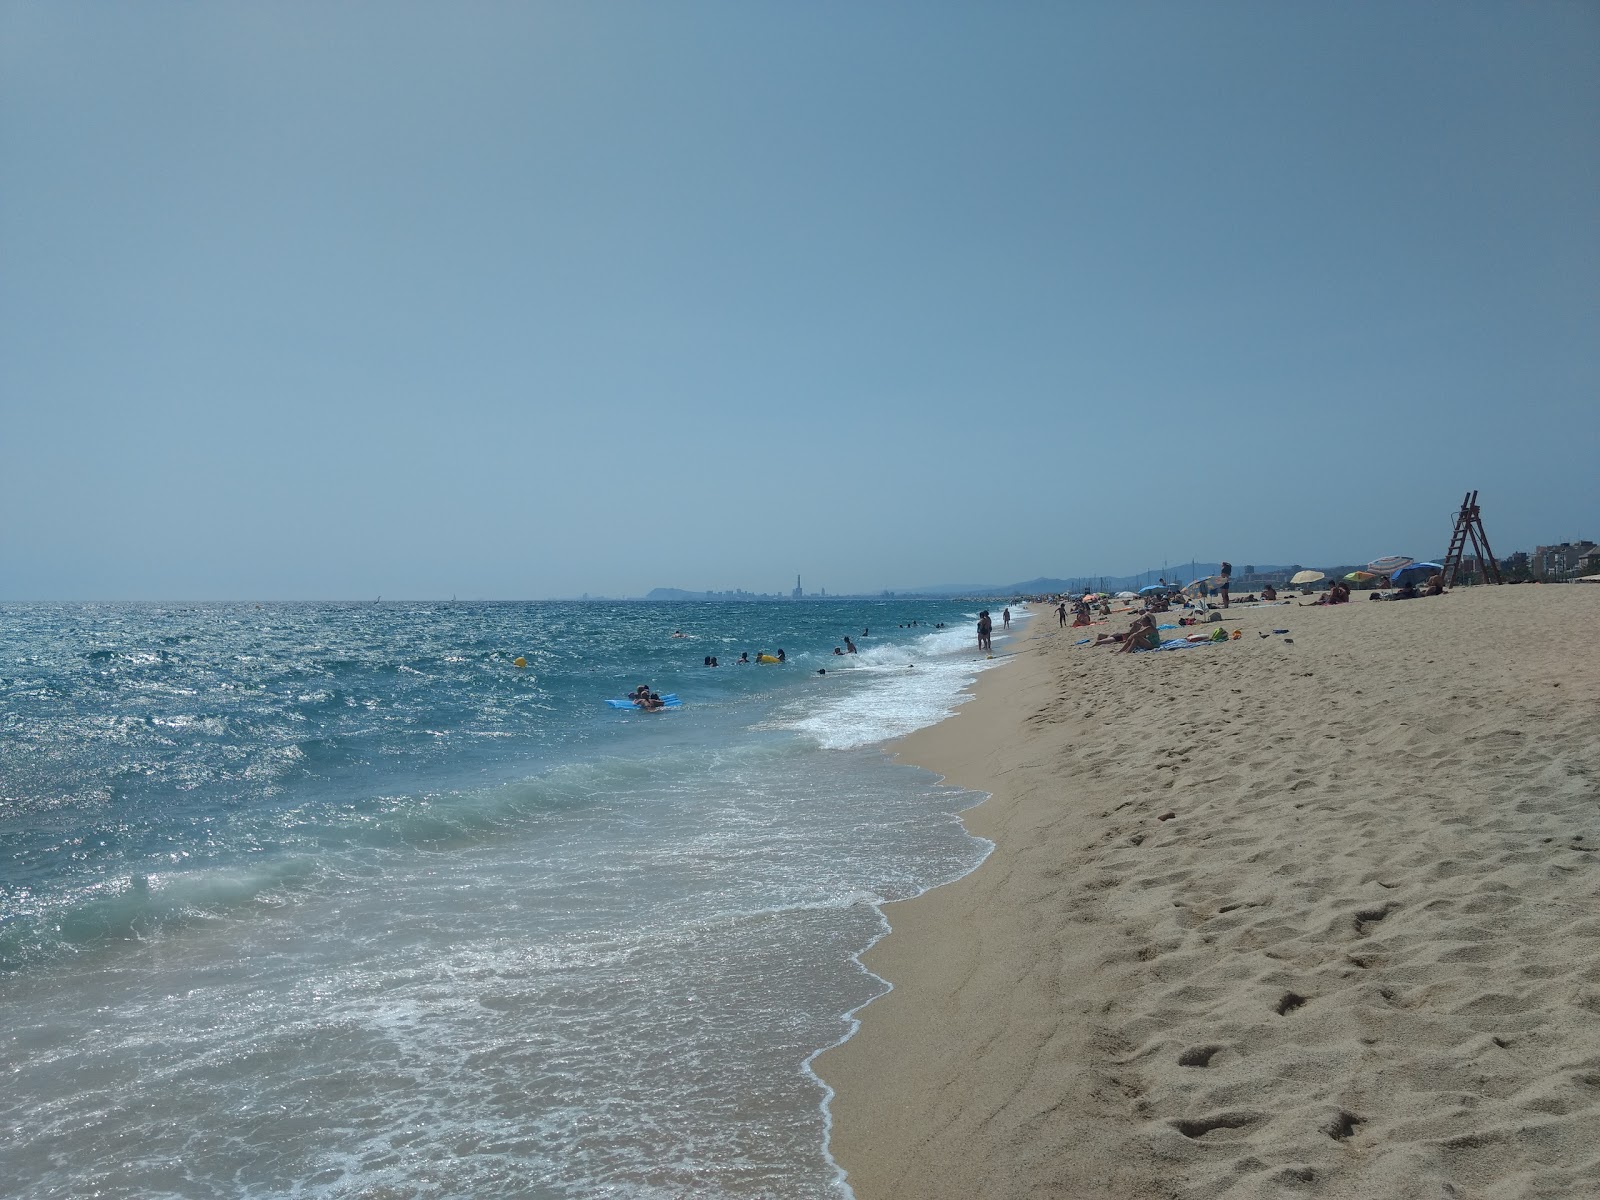 Ocata Plajı'in fotoğrafı parlak kum yüzey ile